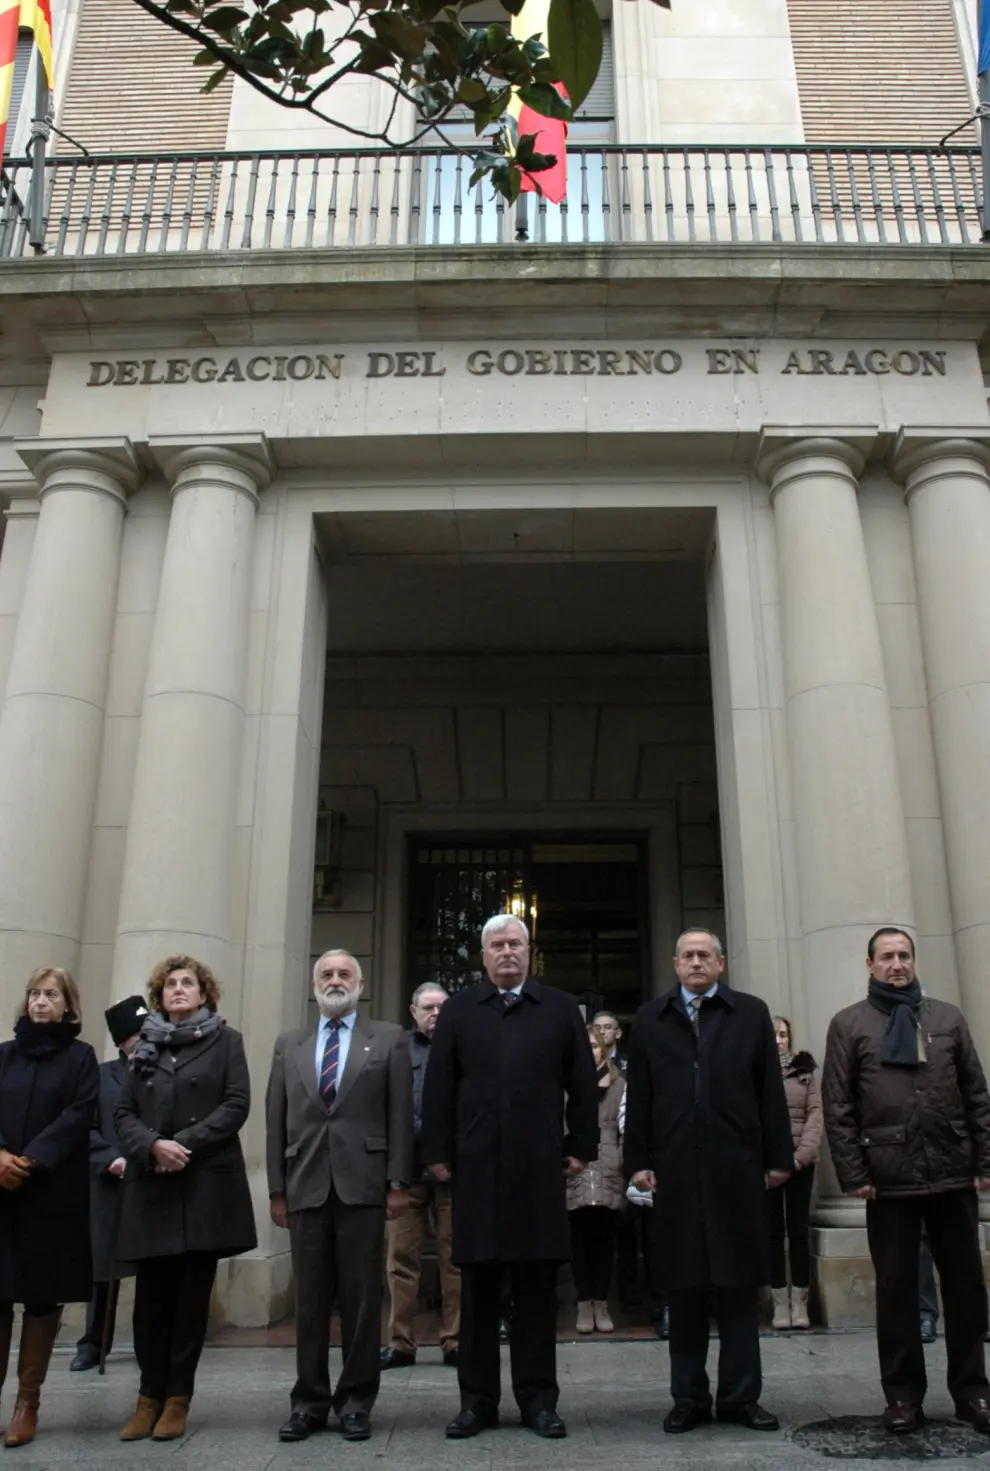 minuto de silencio guardado esta mañana frente a la Delegación del Gobierno de Aragón en Zaragoza